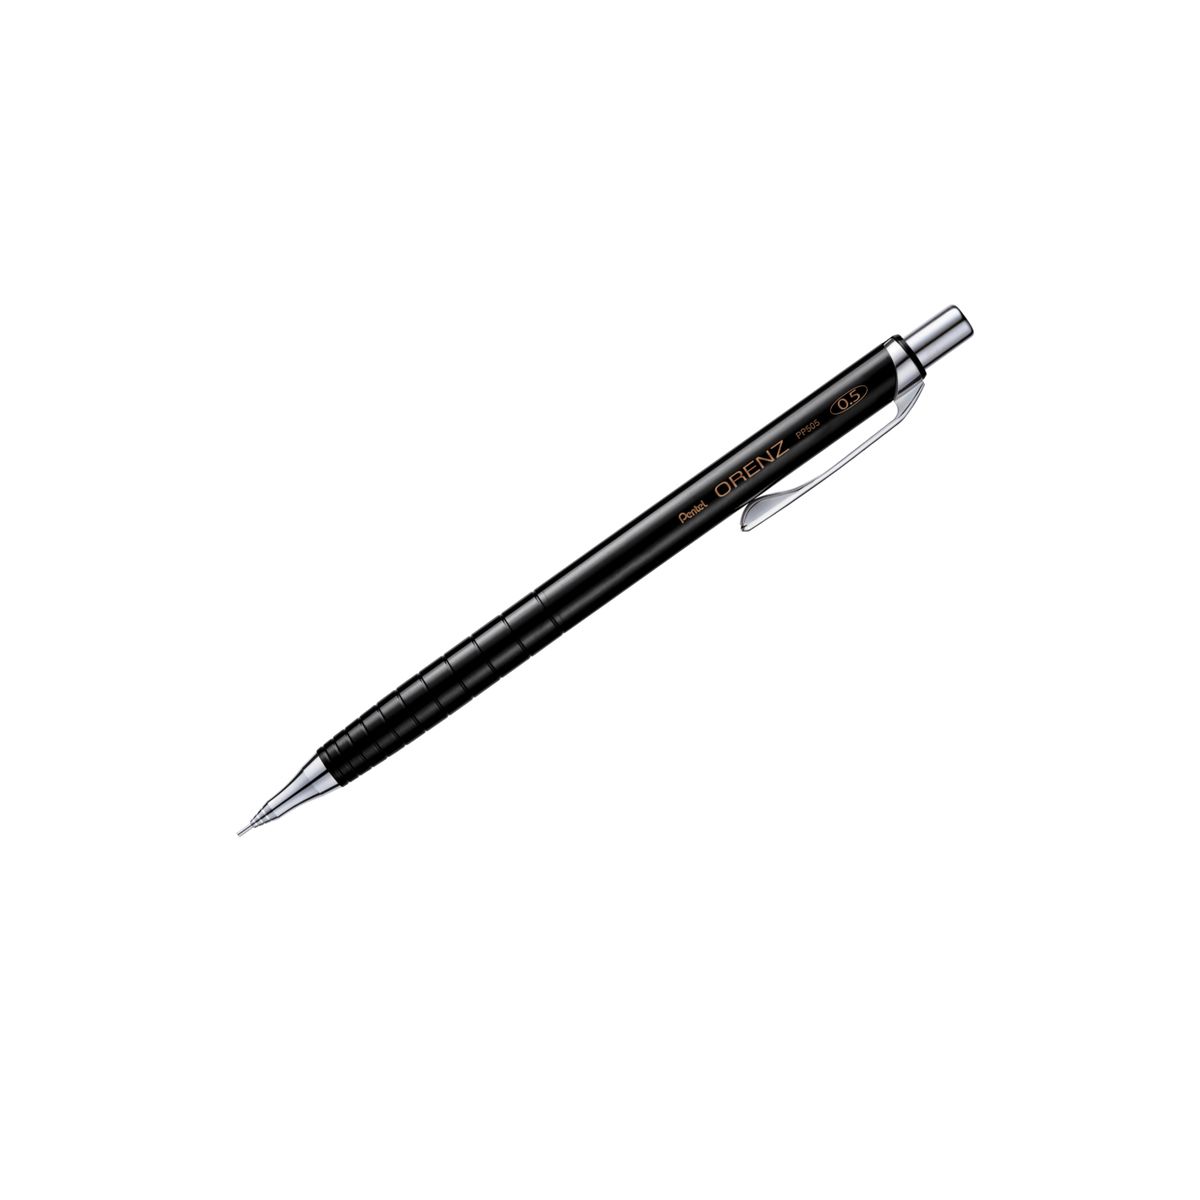 Ołówek automatyczny Pentel 0,5mm (PP505)